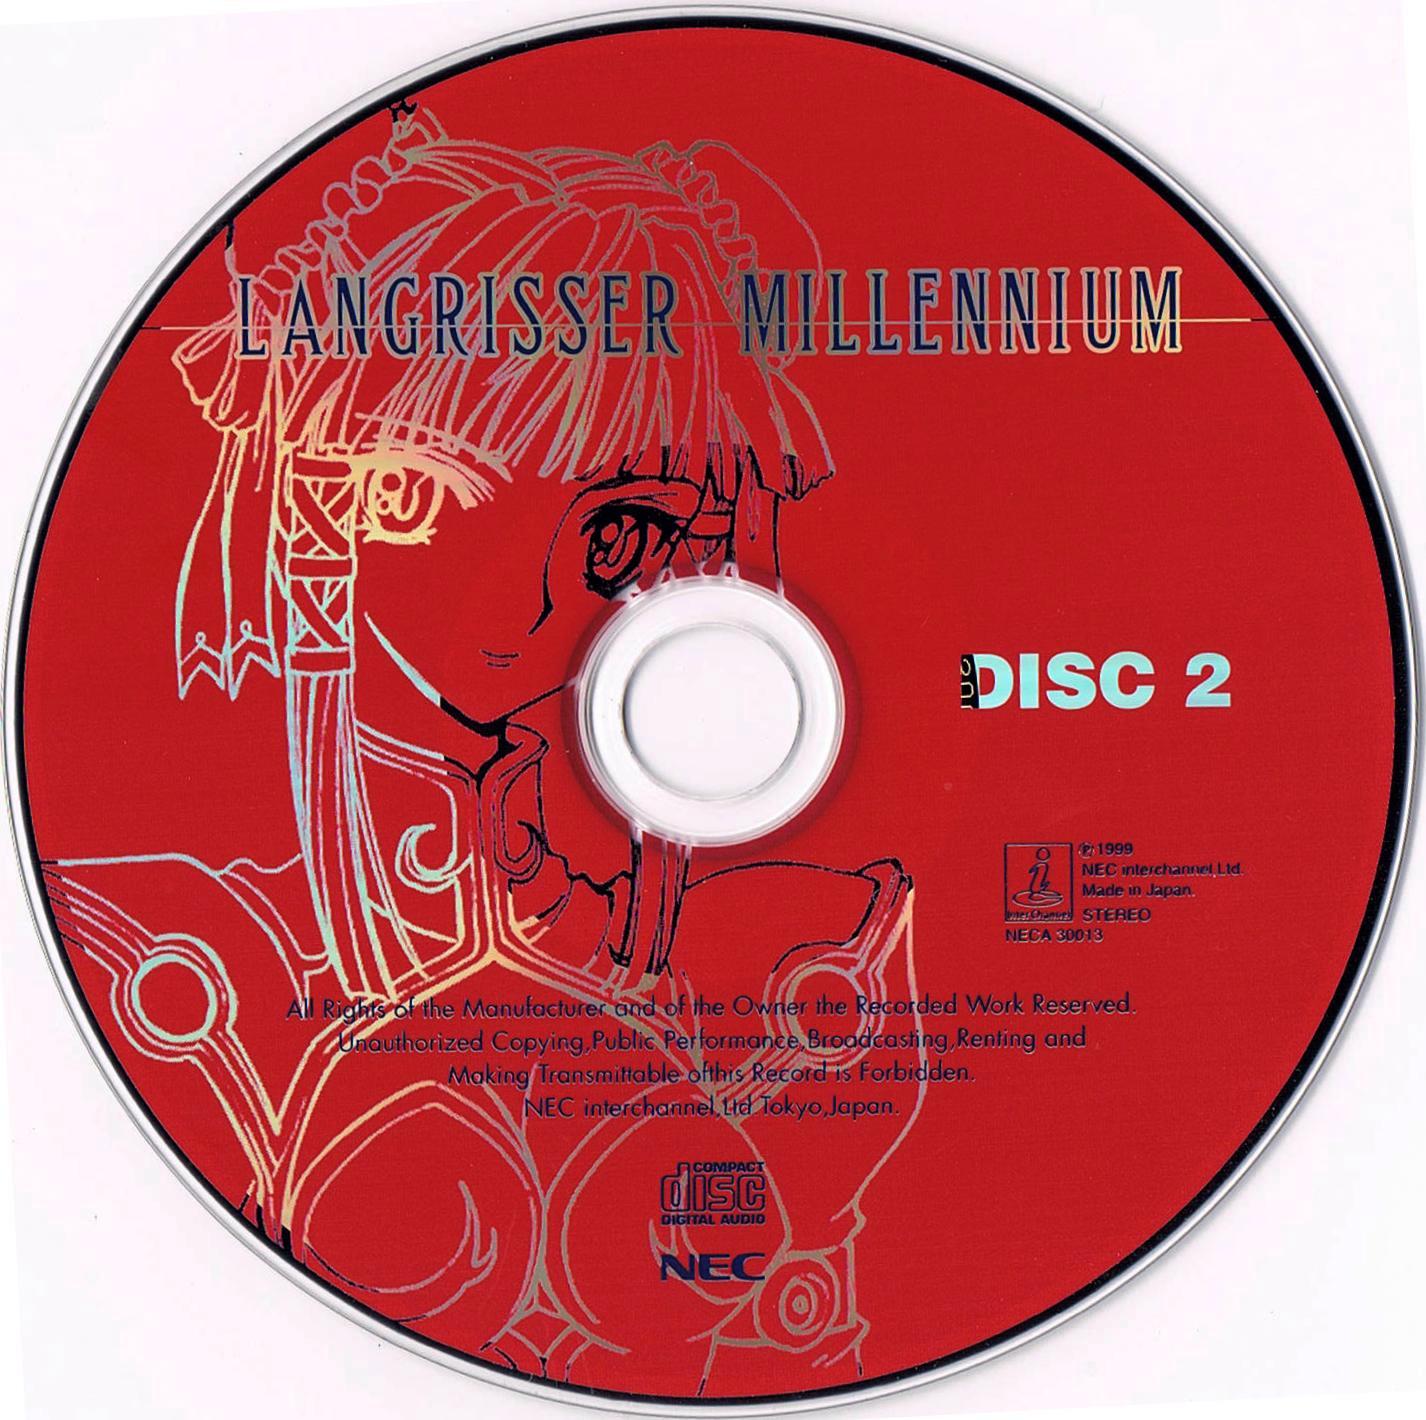 Disc 2.jpg